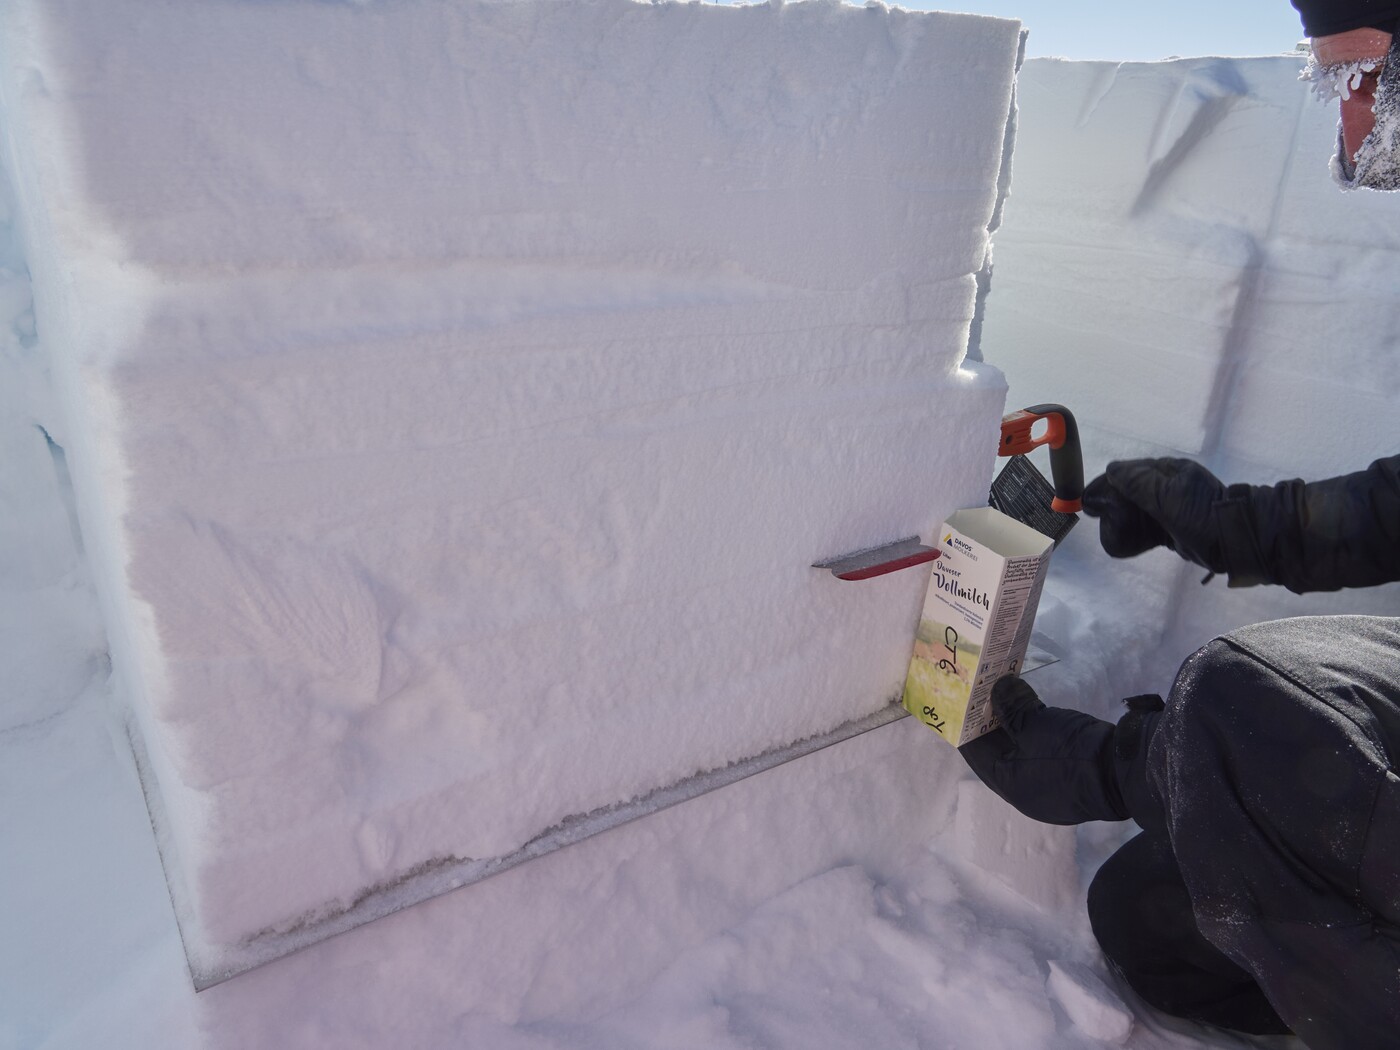 Kurz vor dem endgültigen auf Mass schneiden des Blockes packe ich noch Schneeproben in Davoser Milchpackungen für den Rücktransport. Vor dem Verschicken der Schneeproben werden diese jedoch noch vergossen.